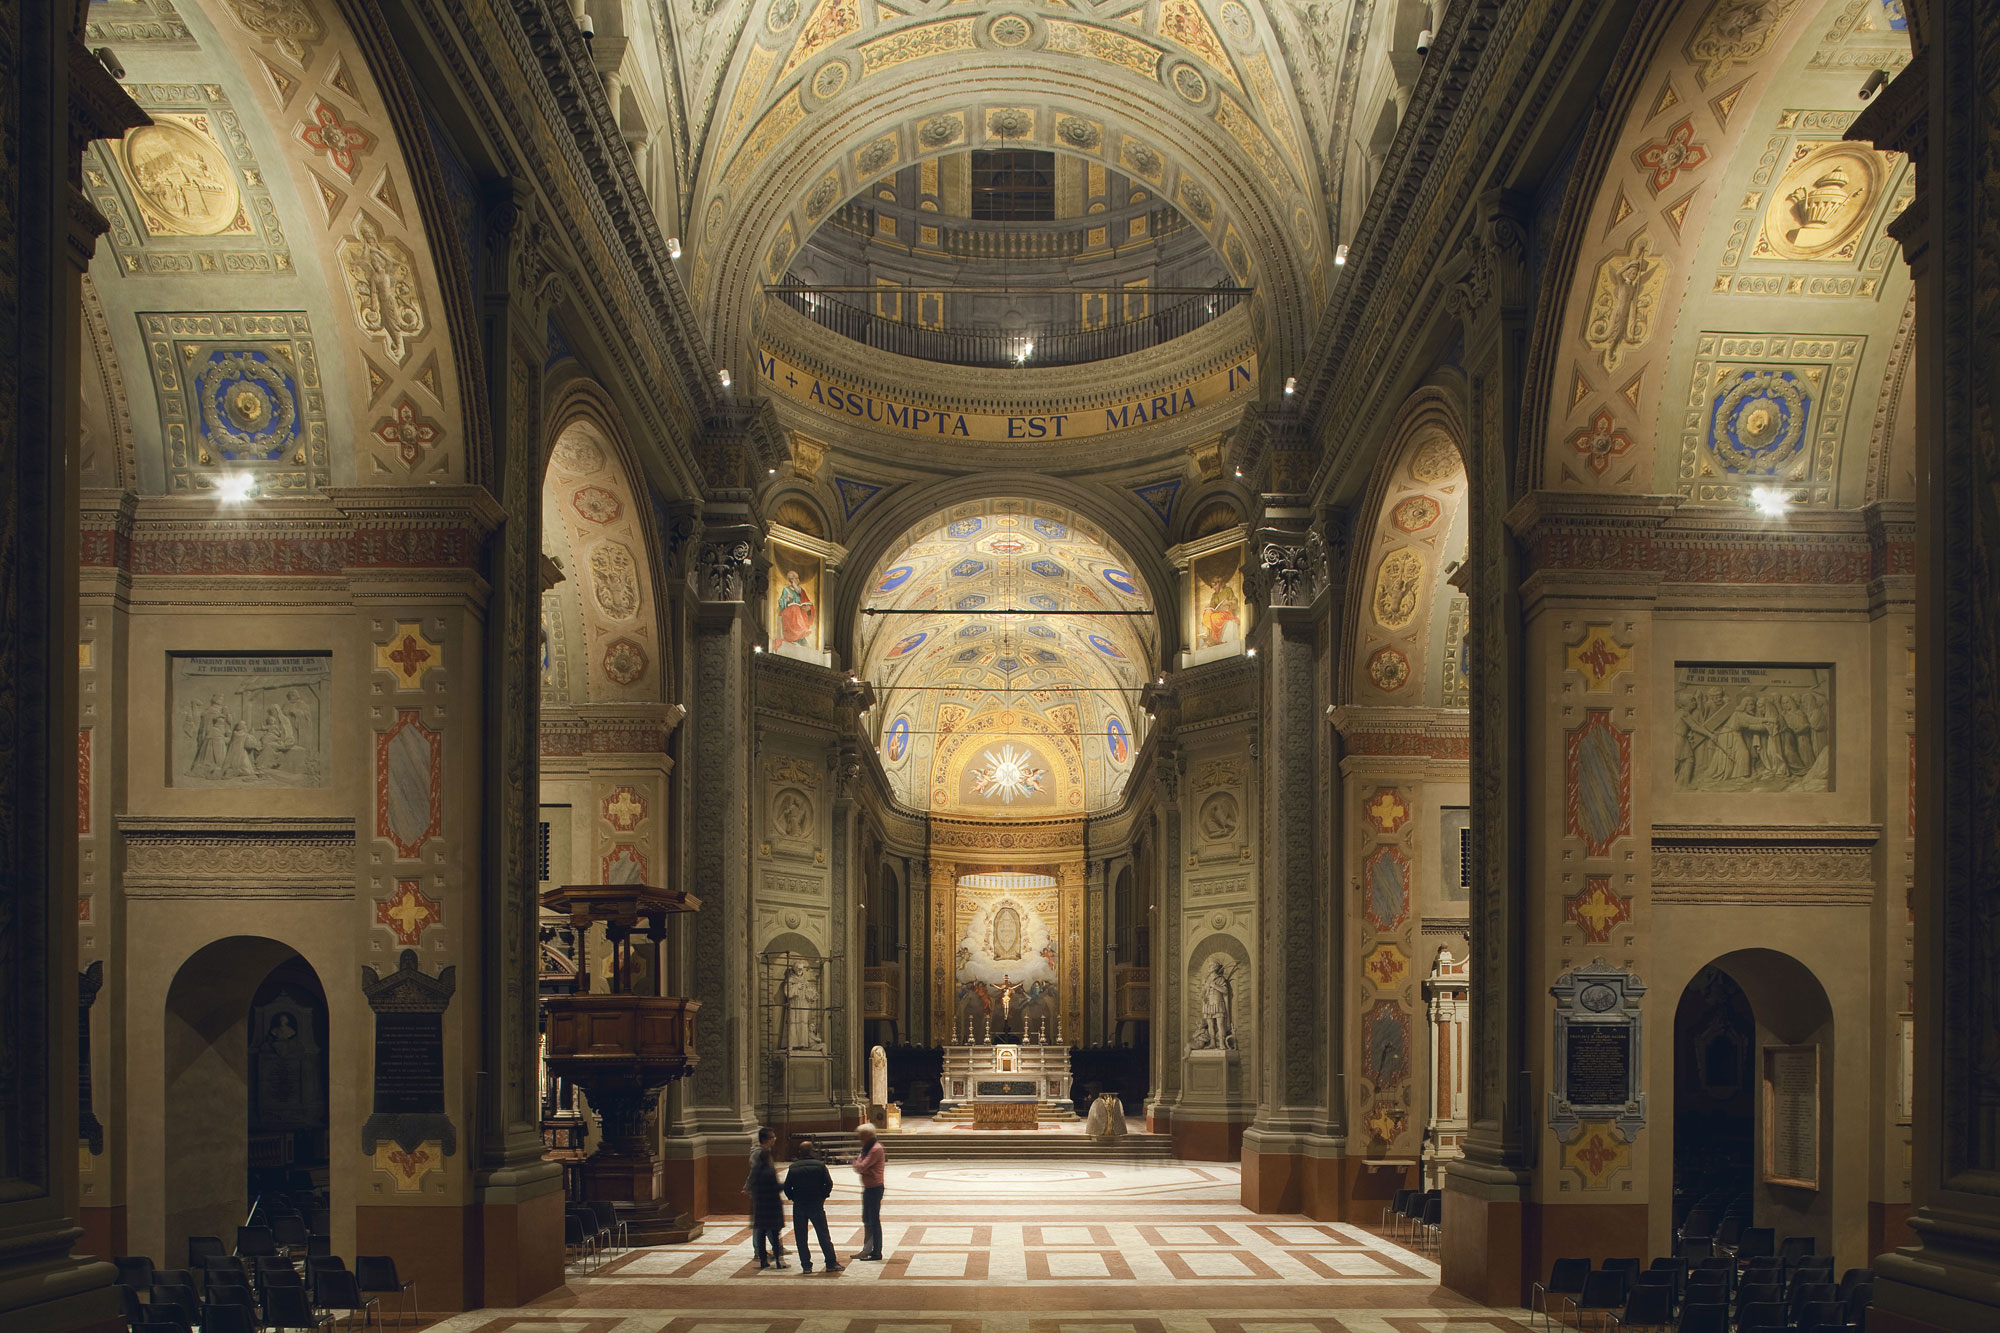 iGuzzini illuminates the rebirth of Duomo di Carpi